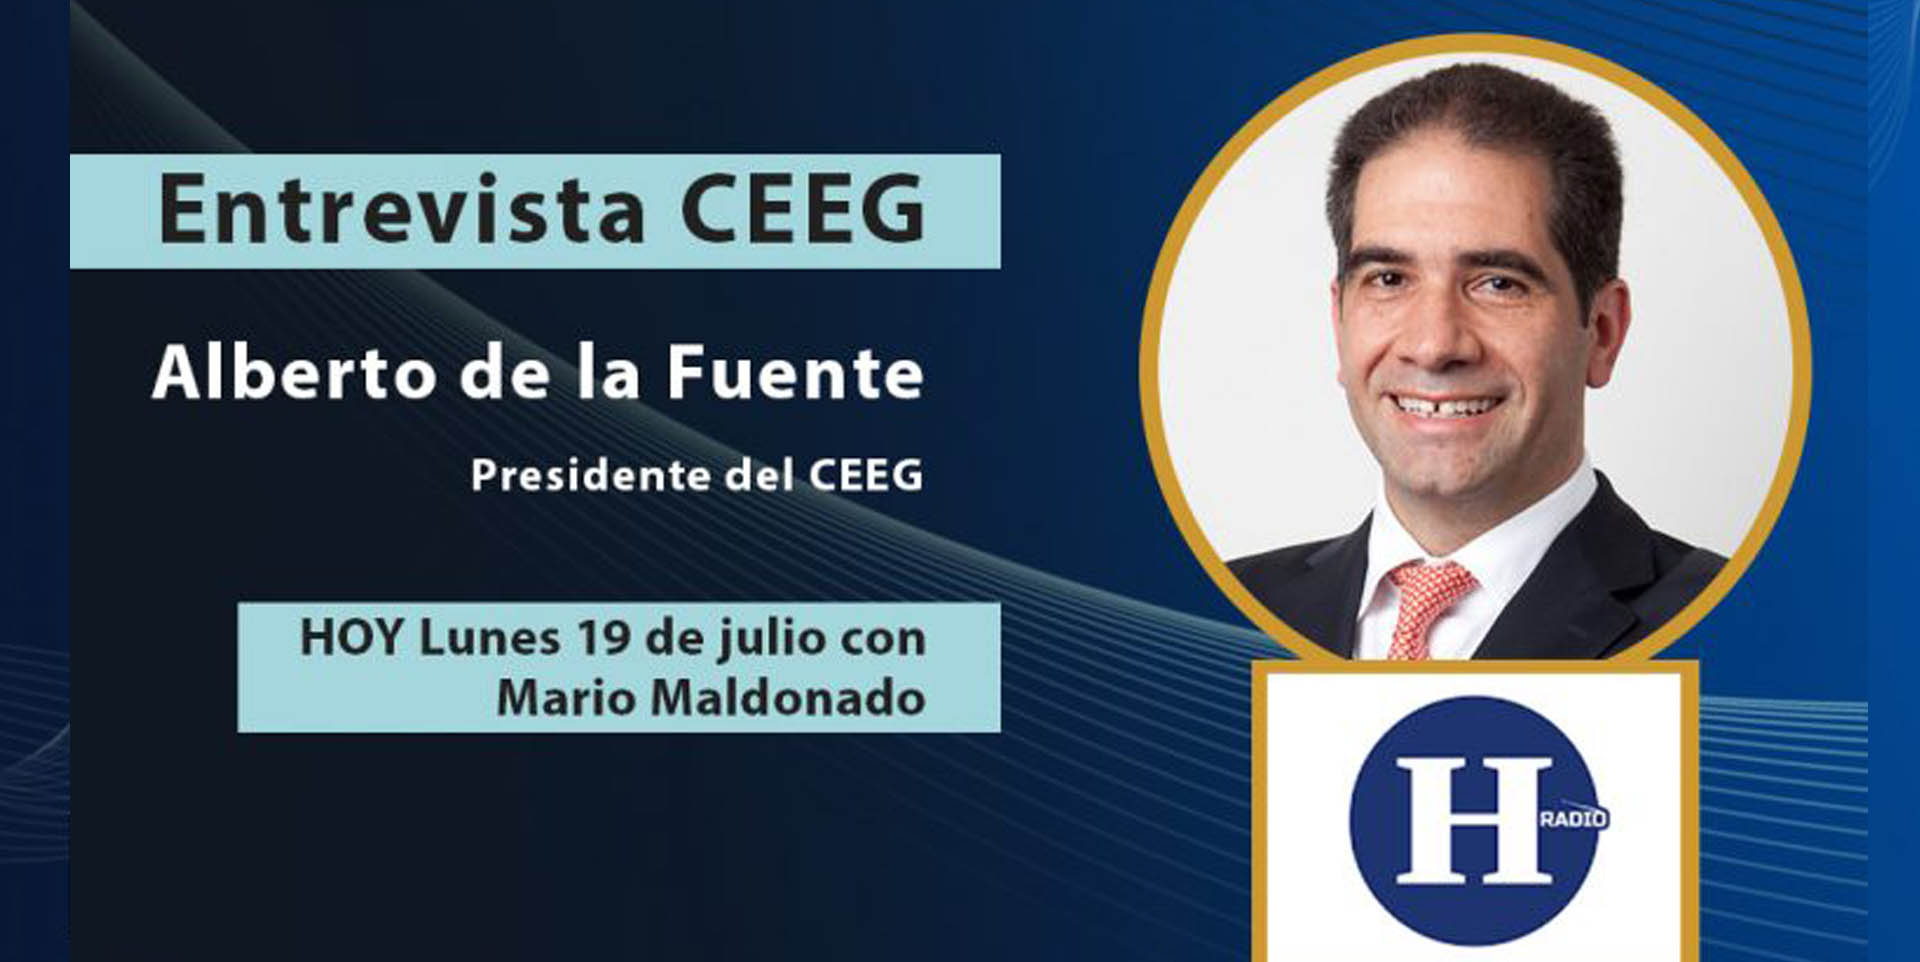 Alberto de la Fuente, Presidente del CEEG con Mario Maldonado en Bitácora de Negocios, El Heraldo Radio